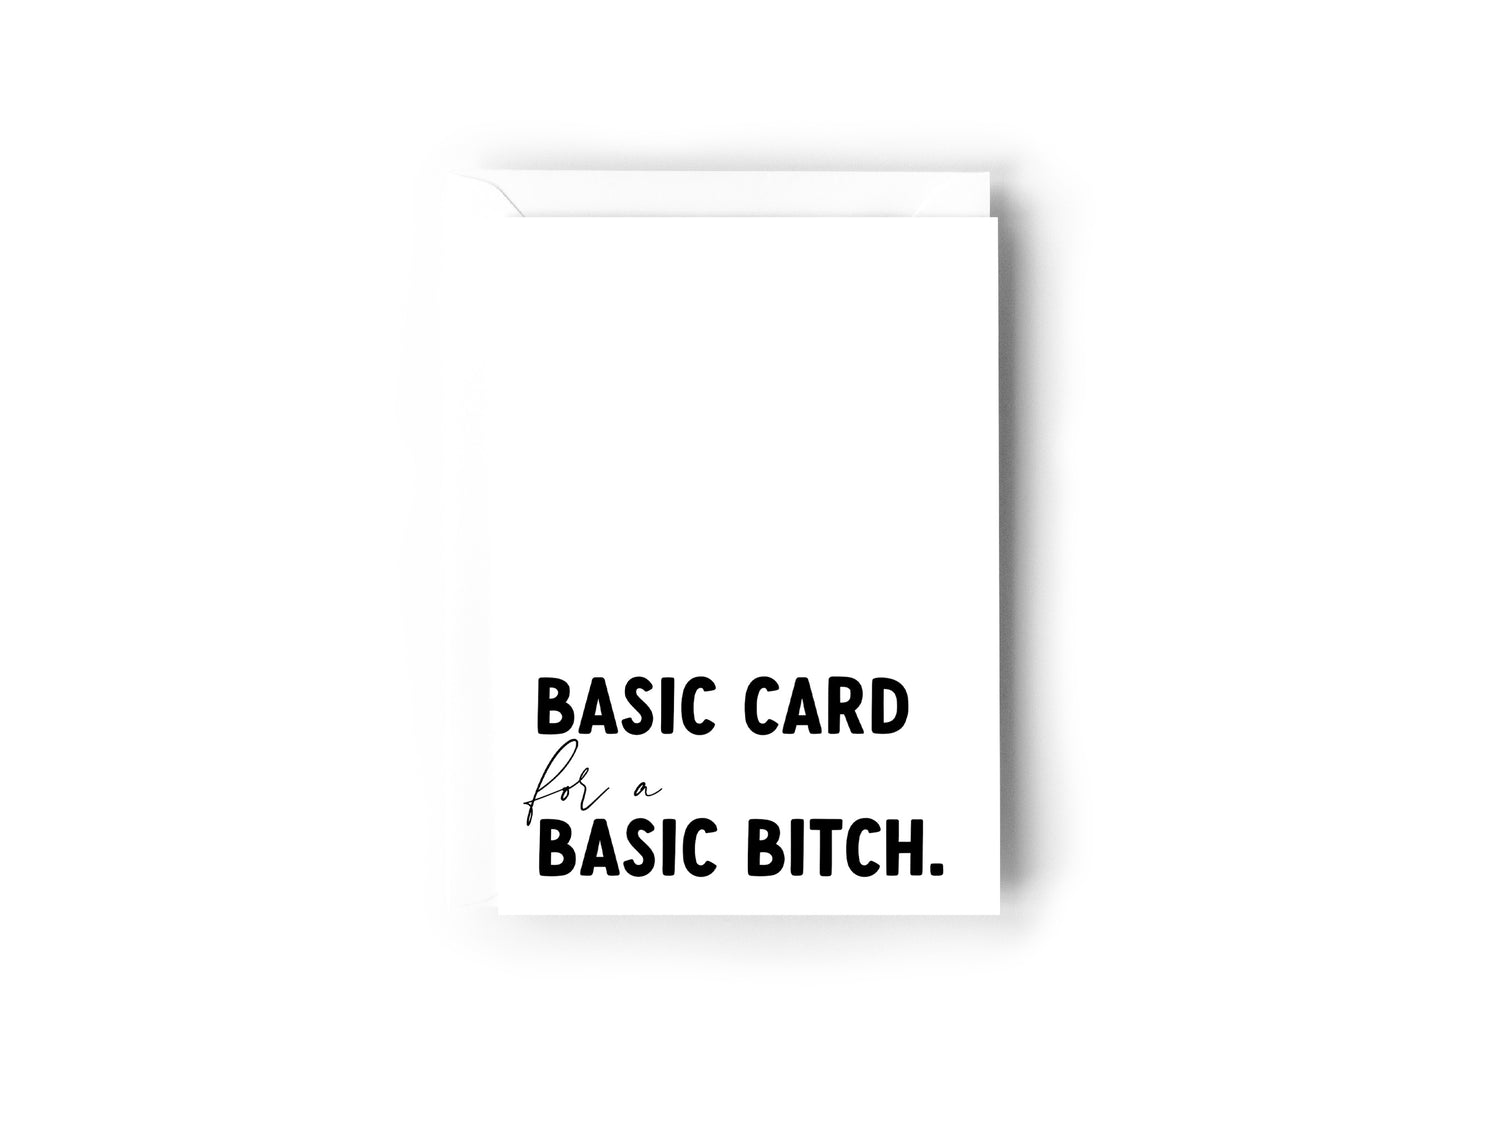 Basic Card for a Basic Bitch